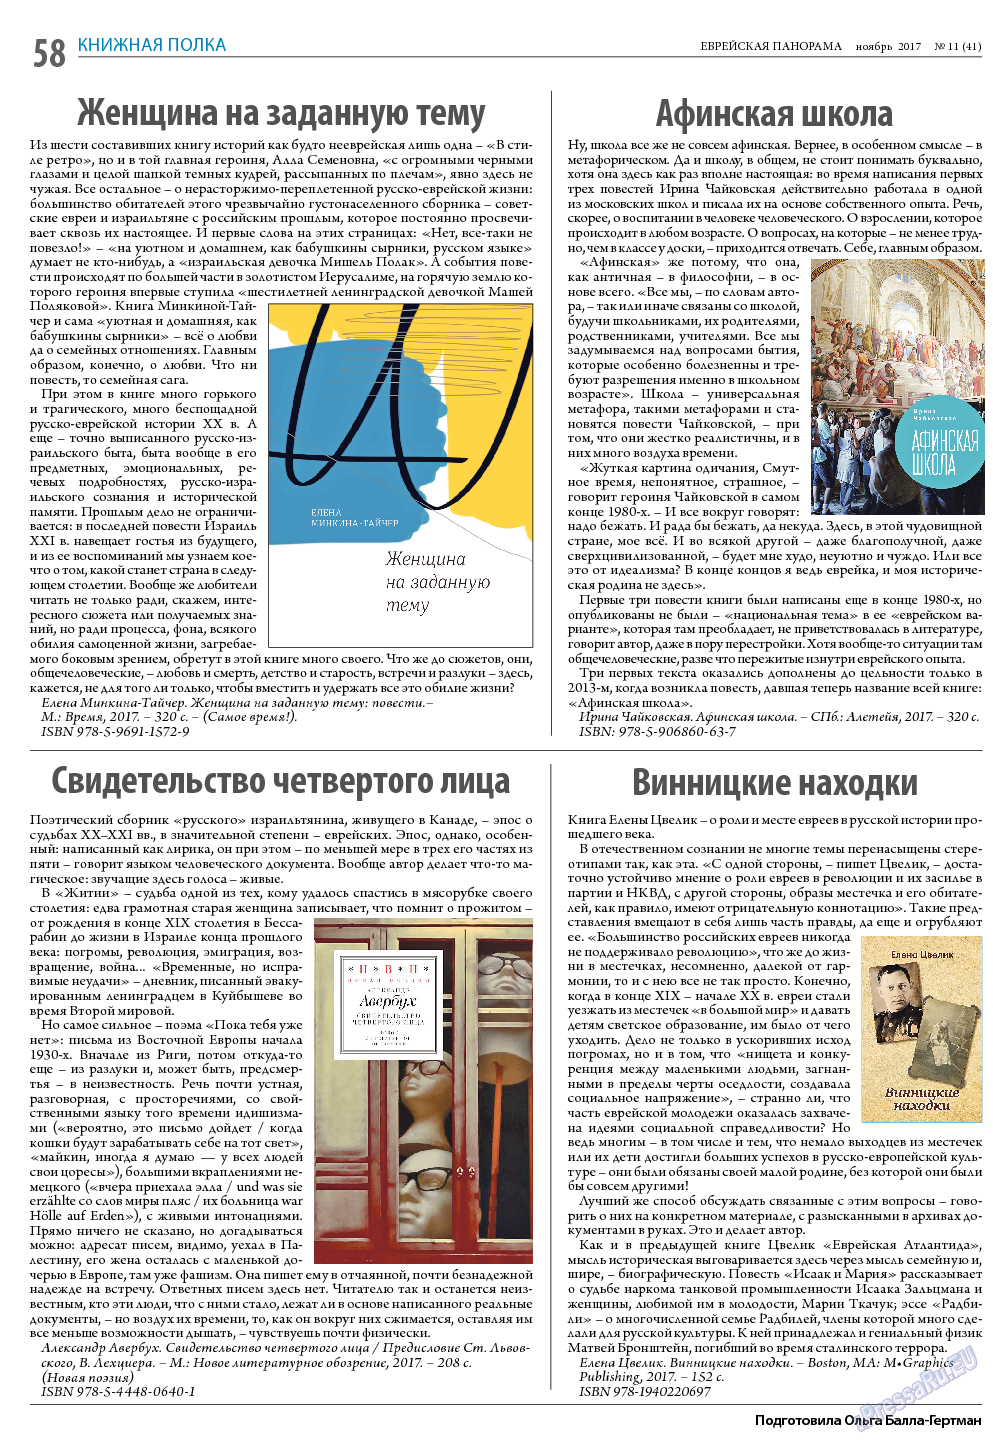 Еврейская панорама (газета). 2017 год, номер 11, стр. 58